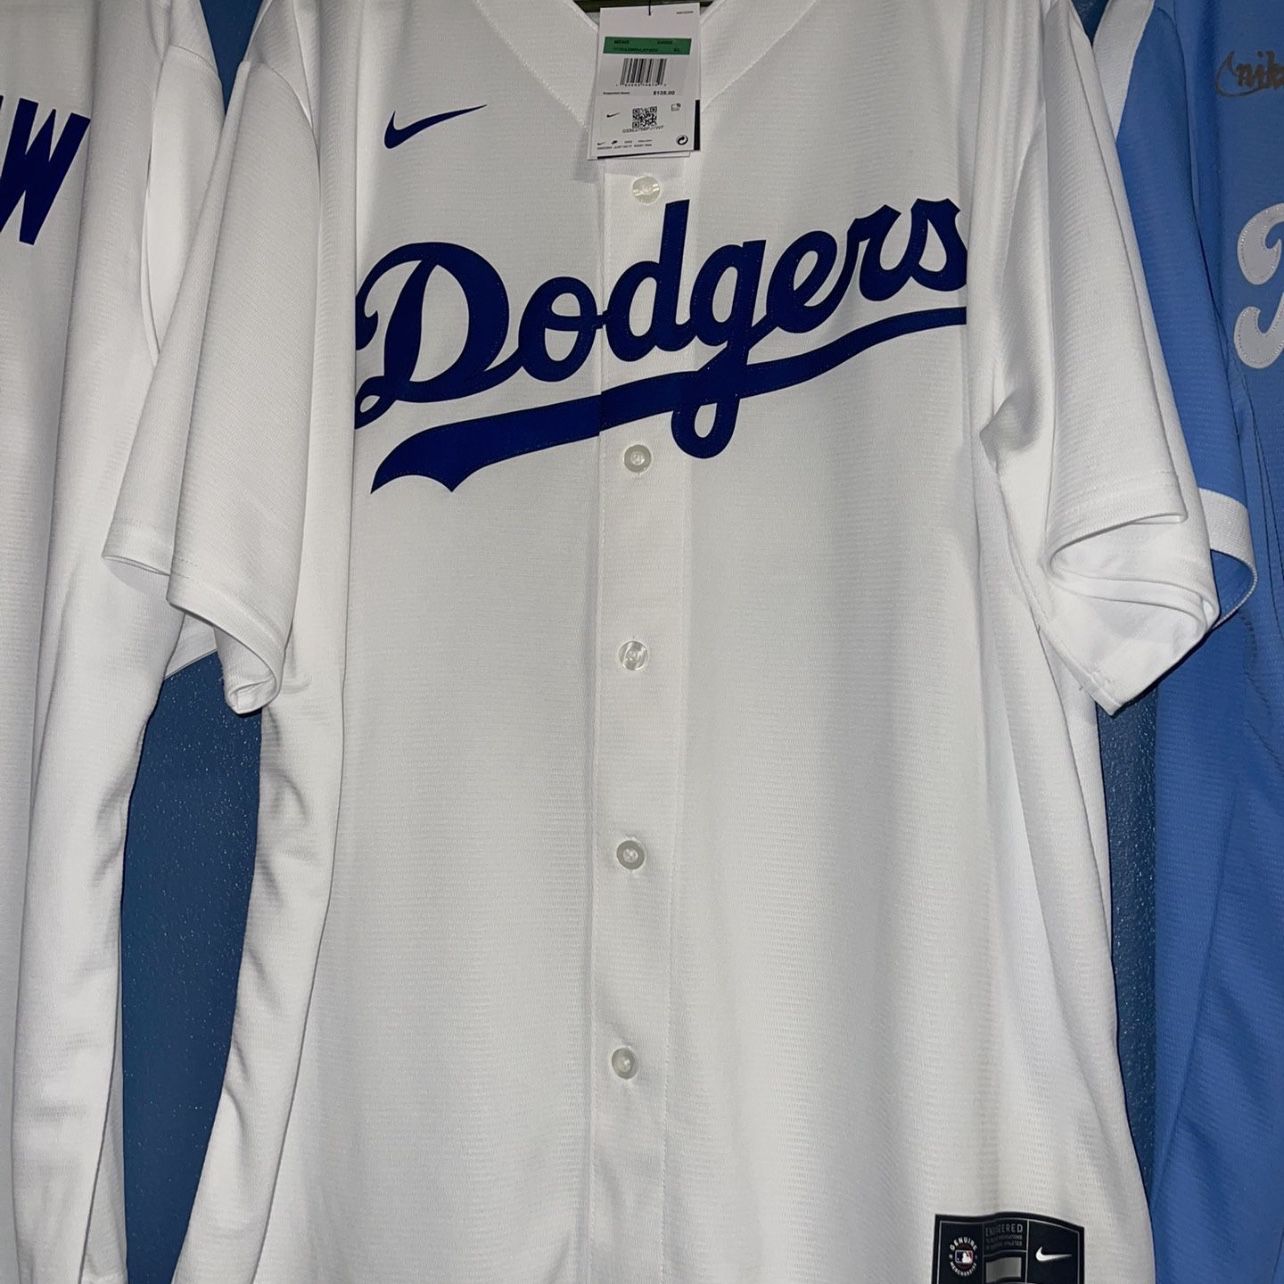 Nike Dodgers Mookie Betts Jersey for Sale in Rosemead, CA - OfferUp